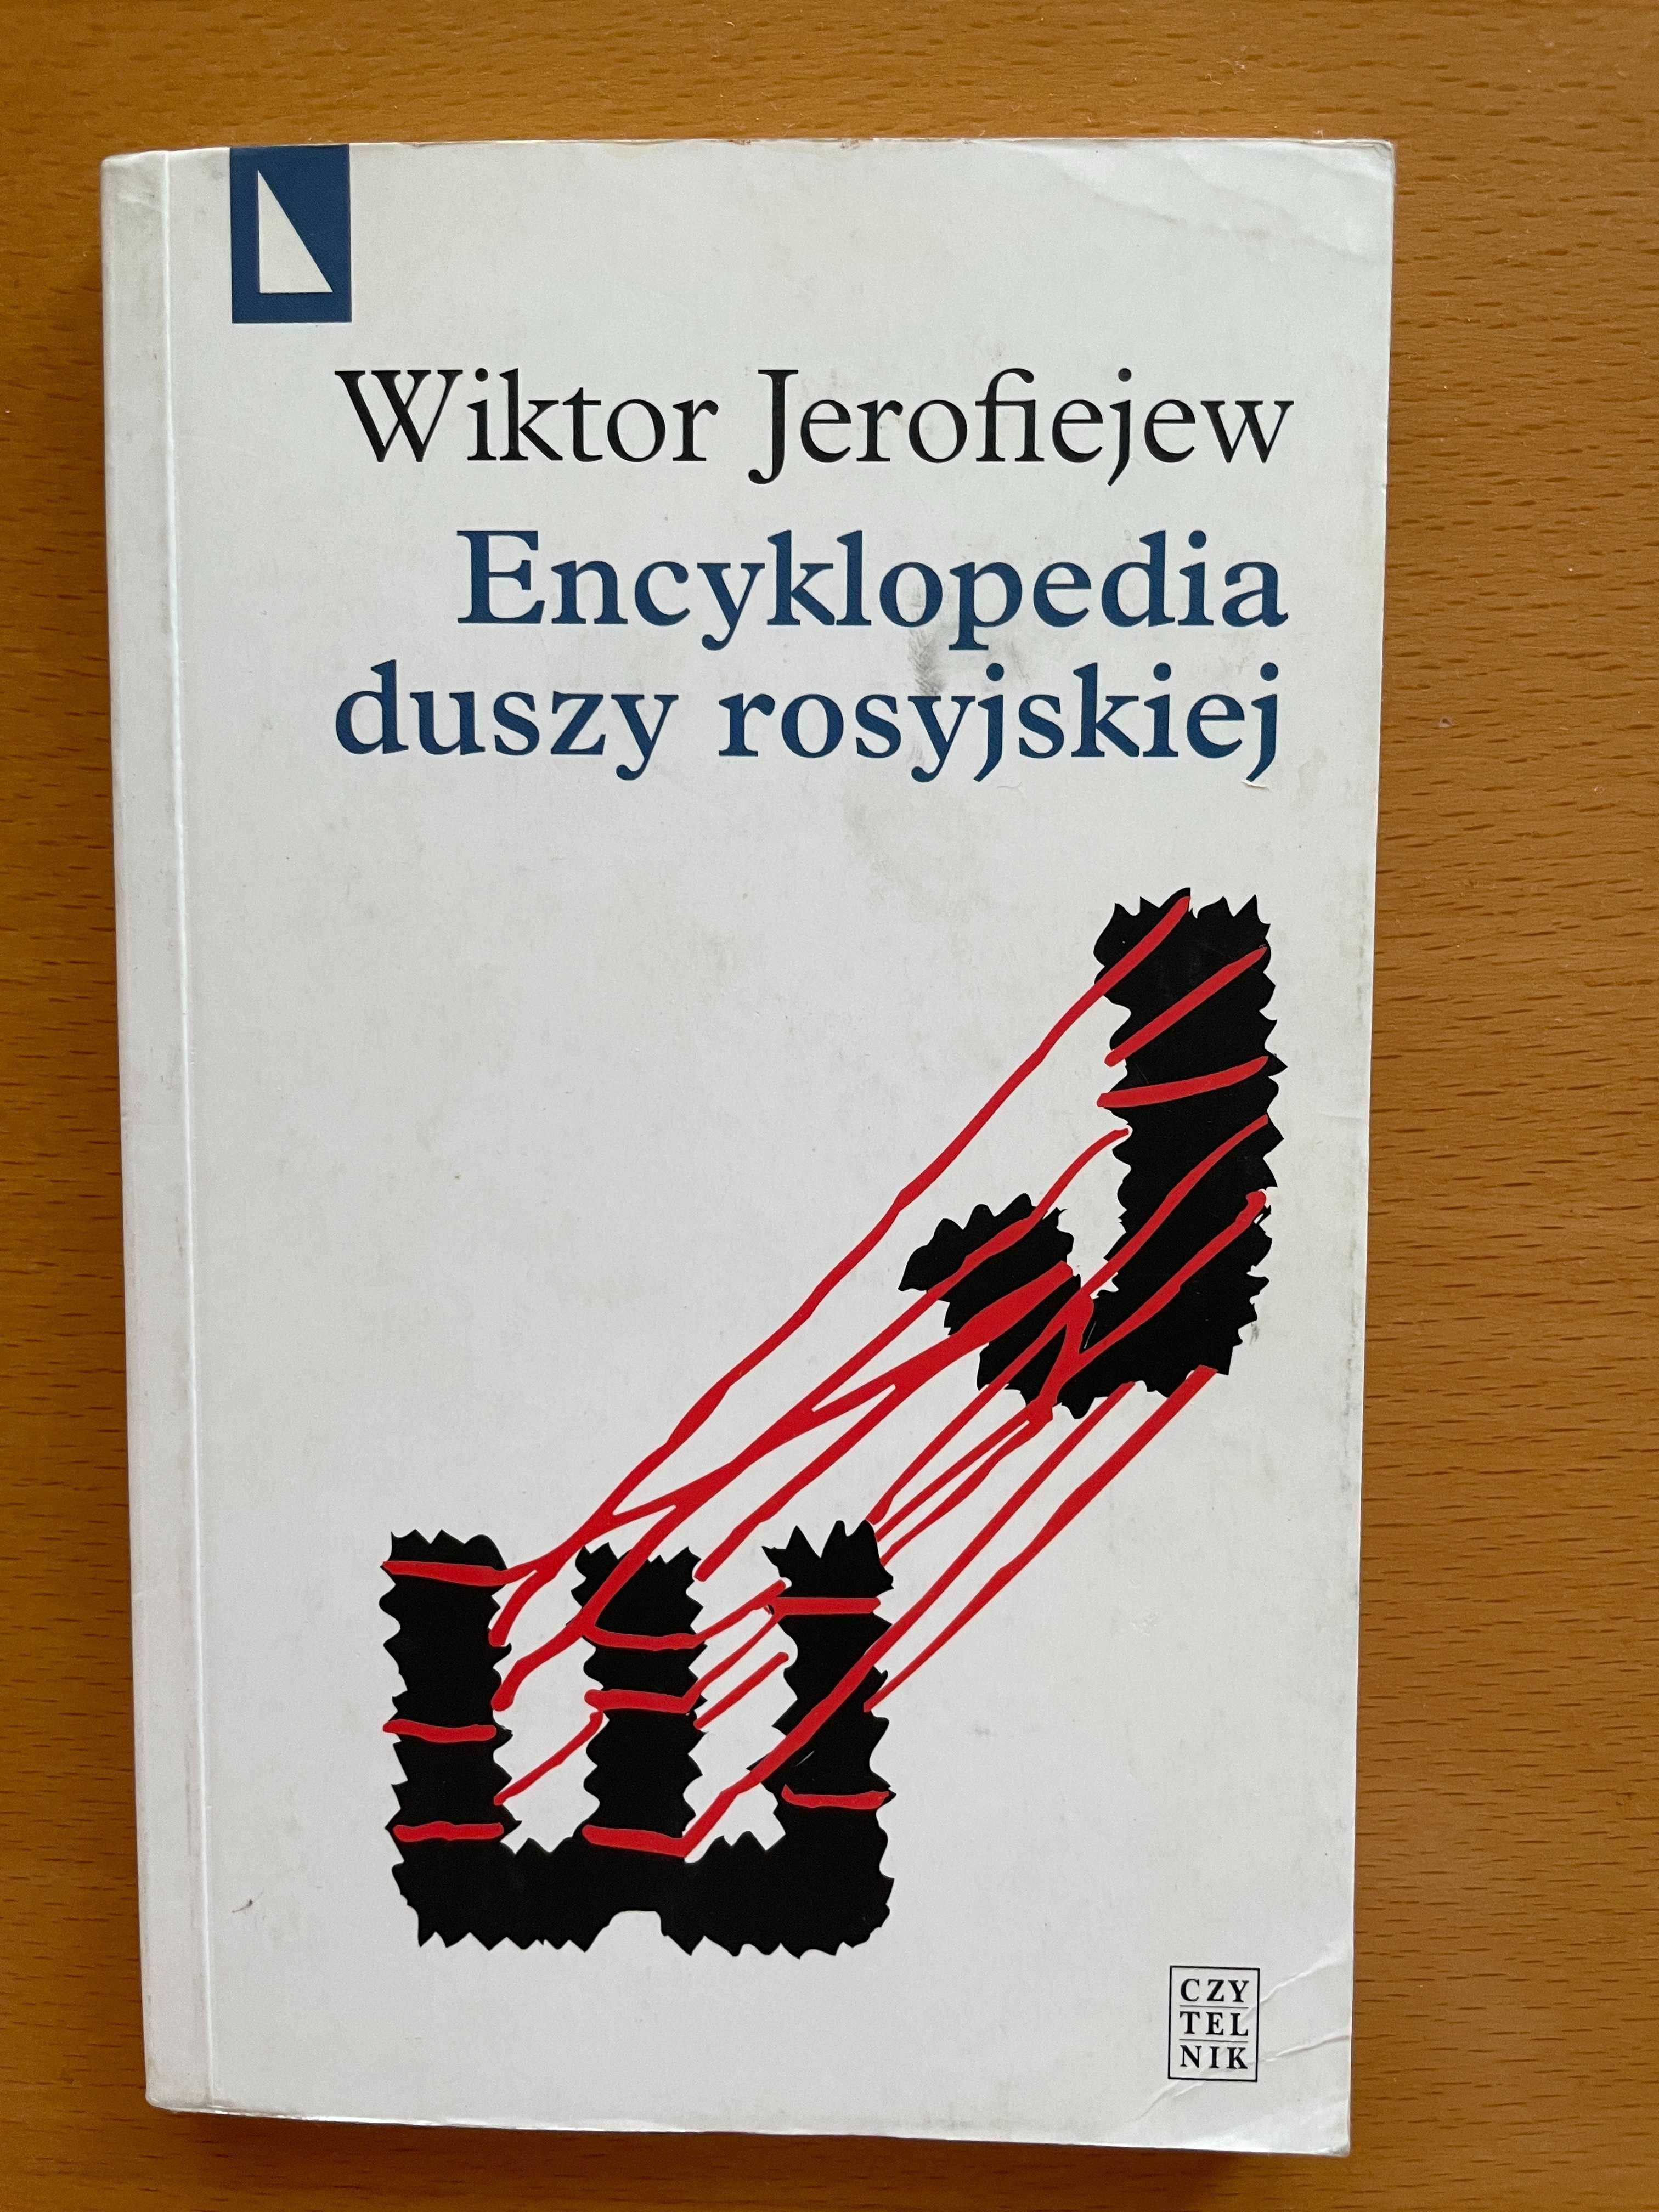 Encyklopedia duszy rosyjskiej Wiktor Jerofiejew